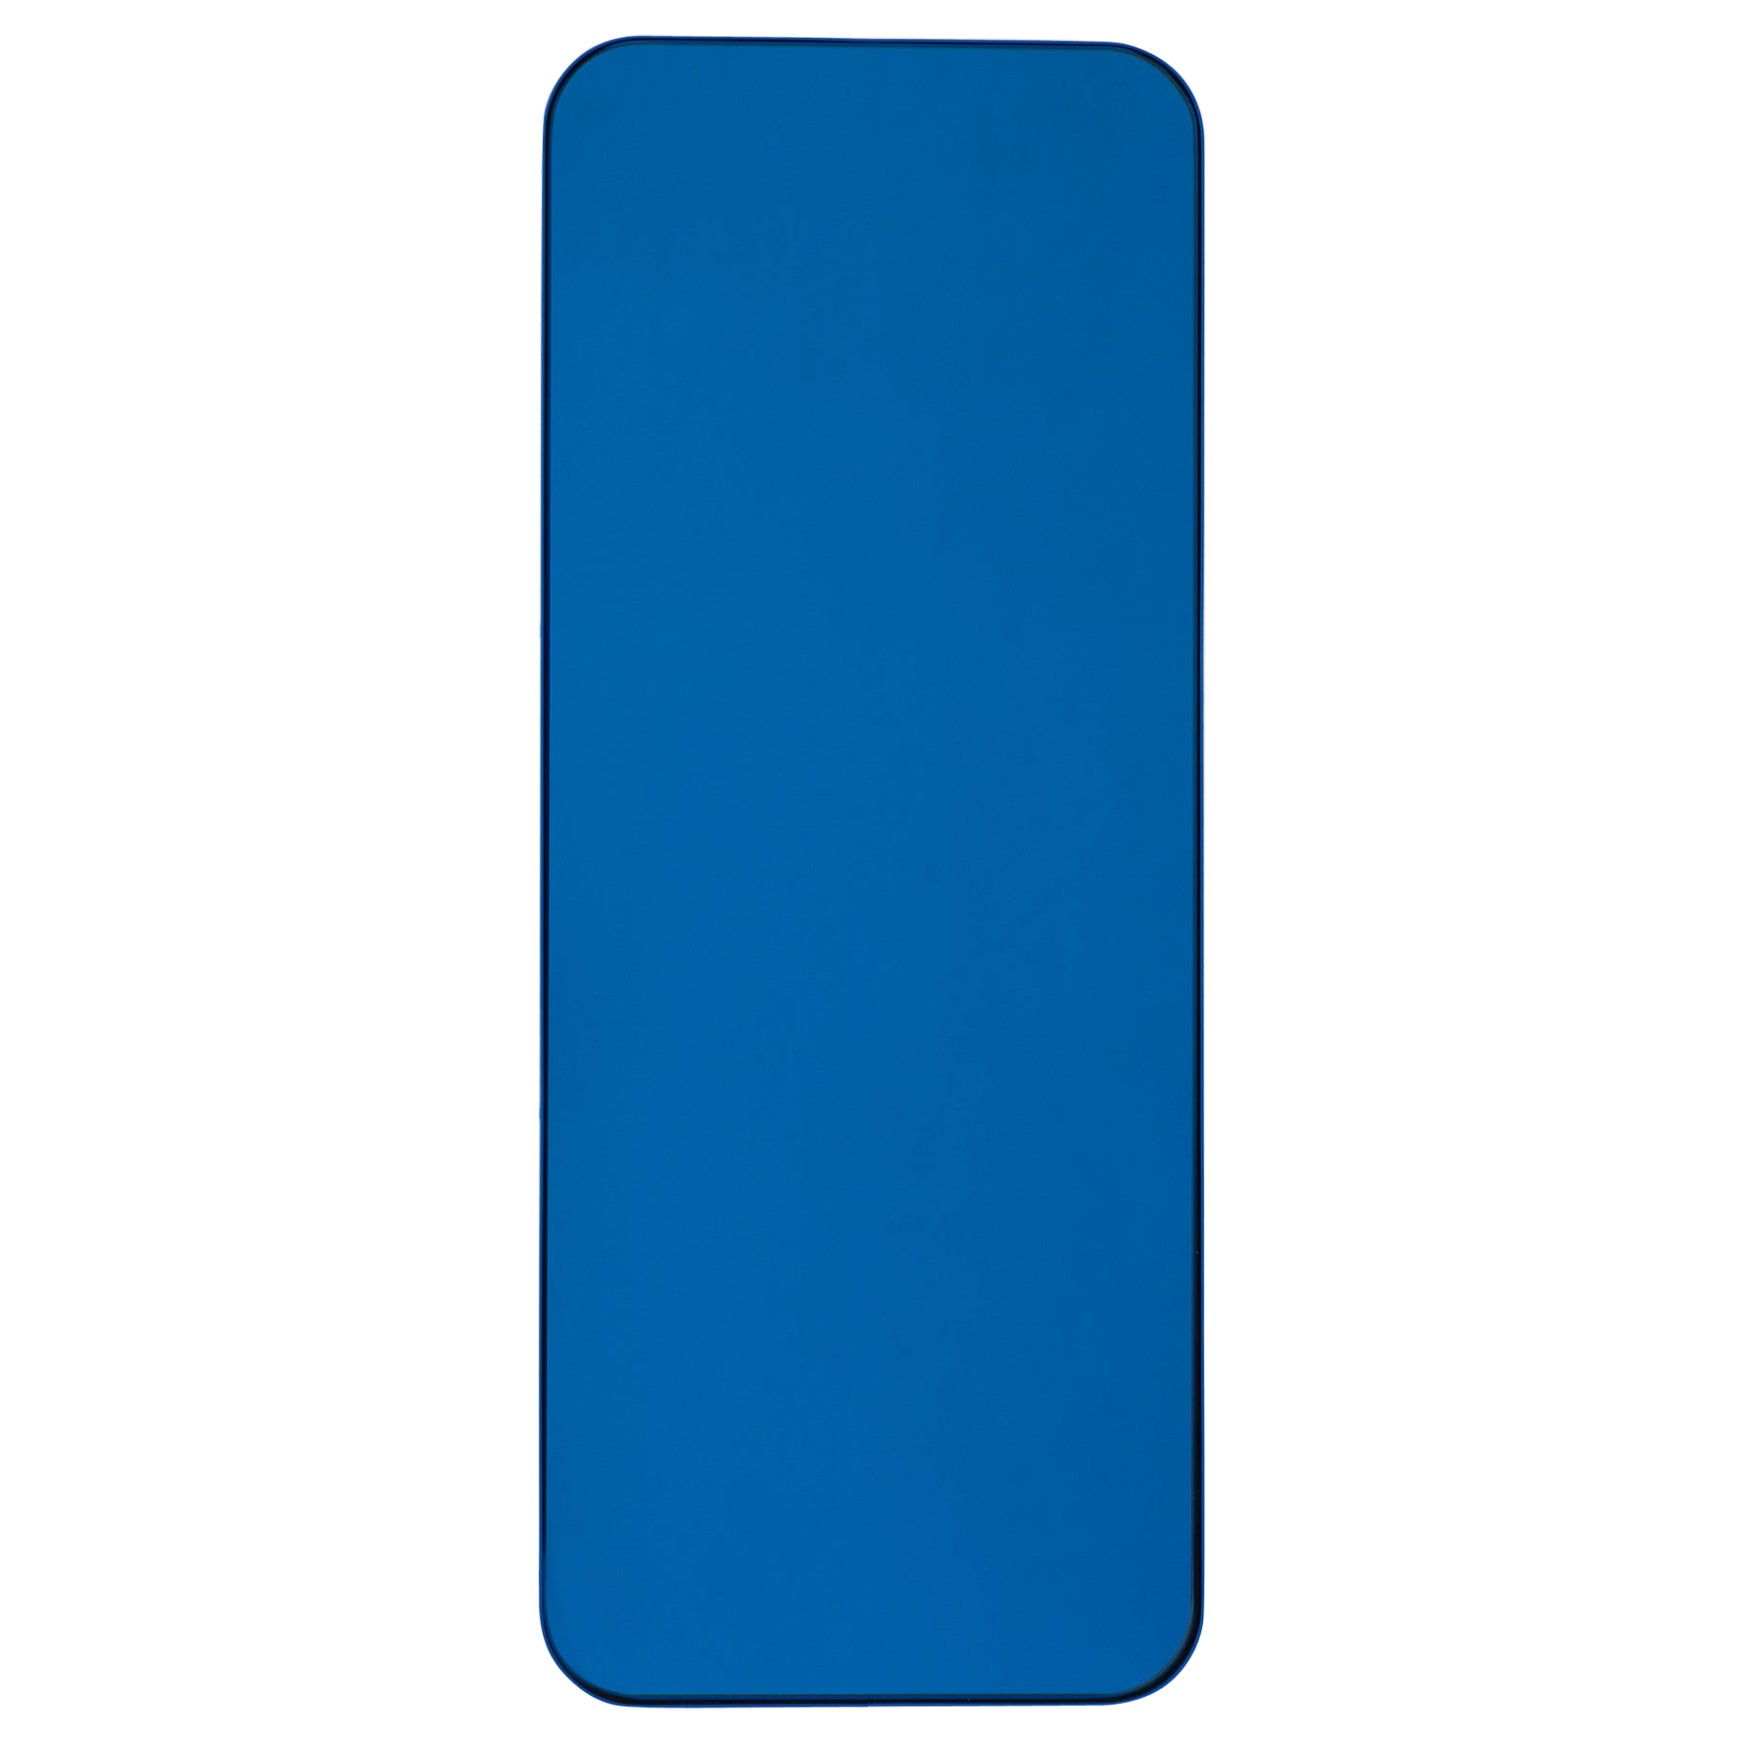 Quadris Rectangular Blau getönter Spiegel mit blauem Rahmen, Medium